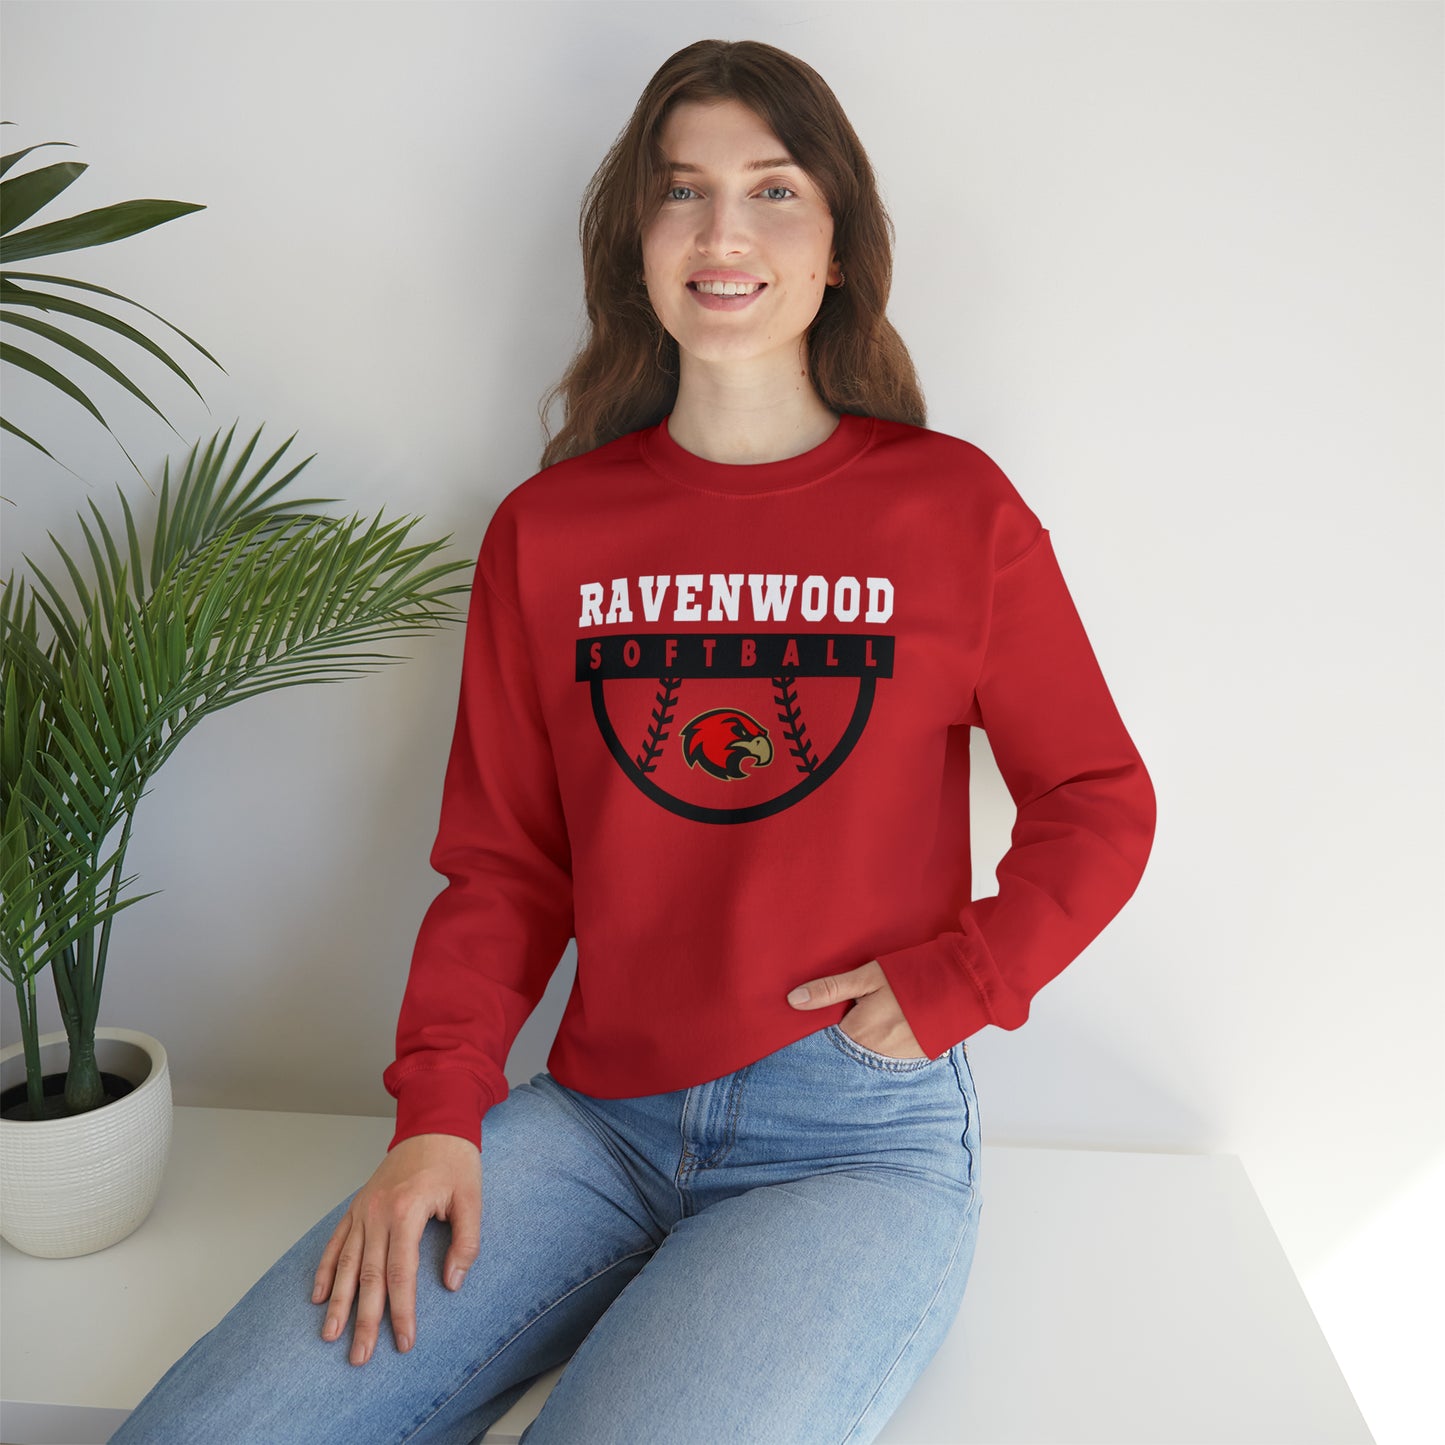 Ravenwood Softball Crewneck Sweatshirt